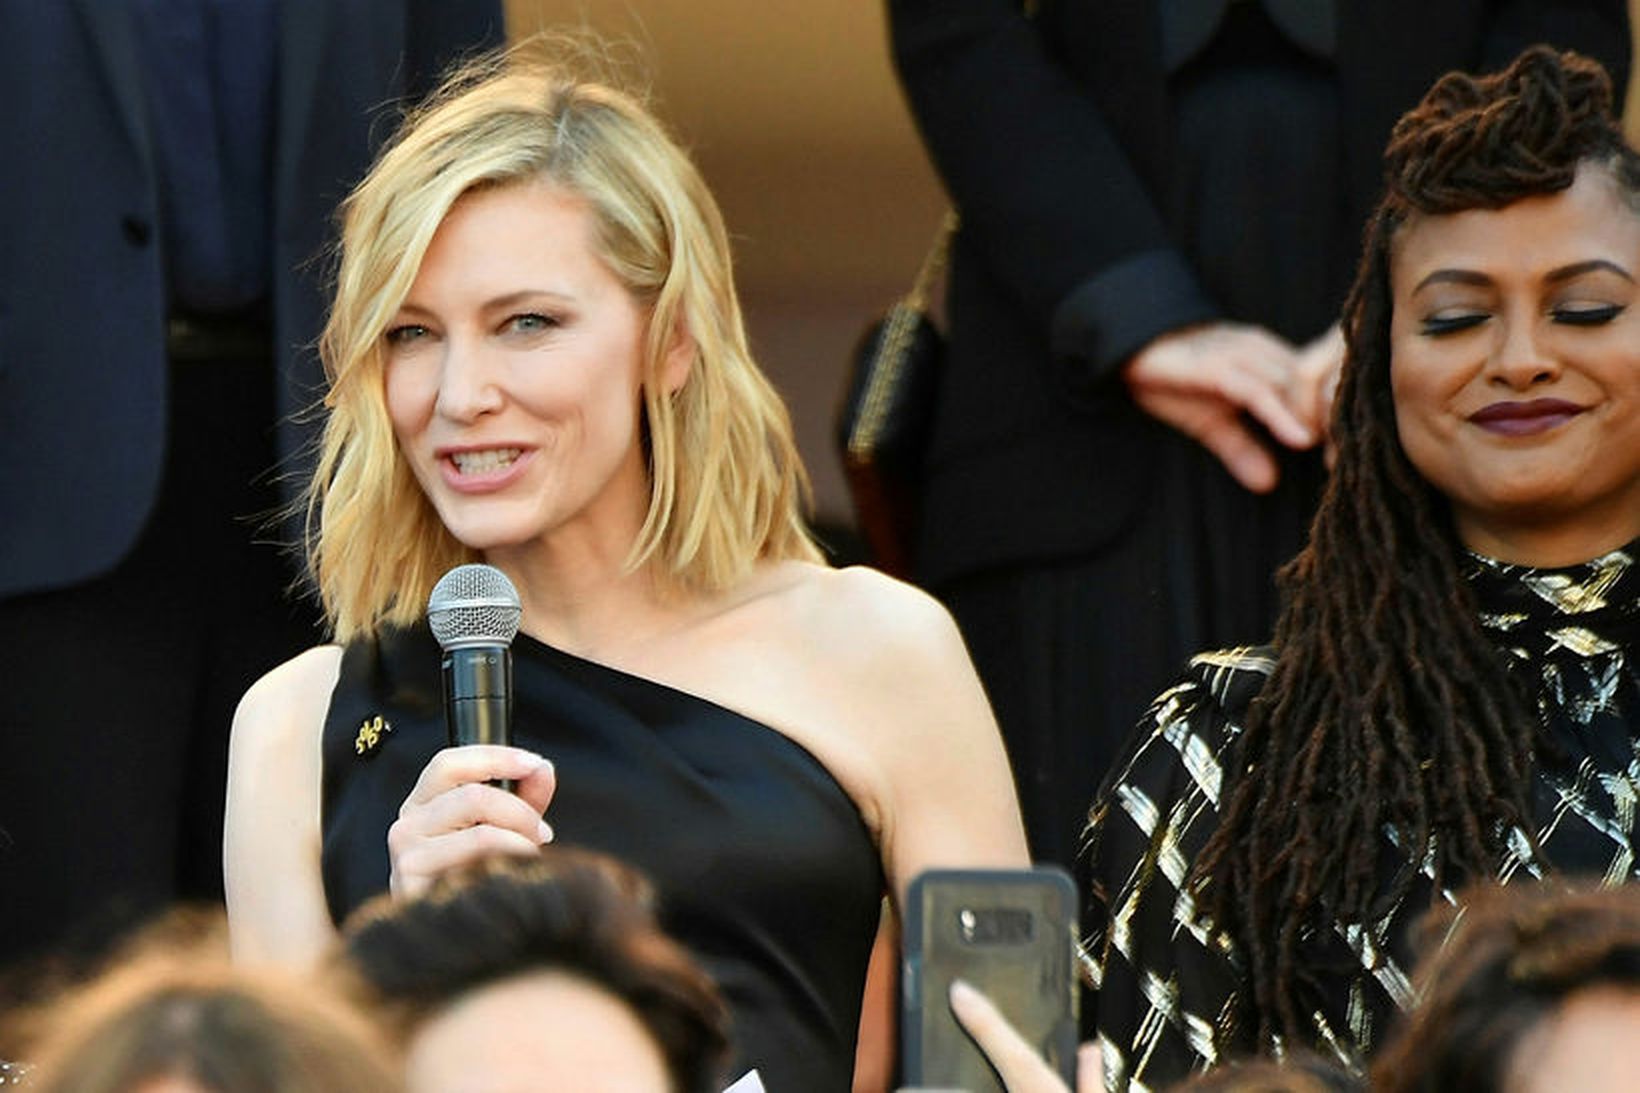 Cate Blanchett les yfirlýsingu kvennanna á rauða dreglinum í dag.